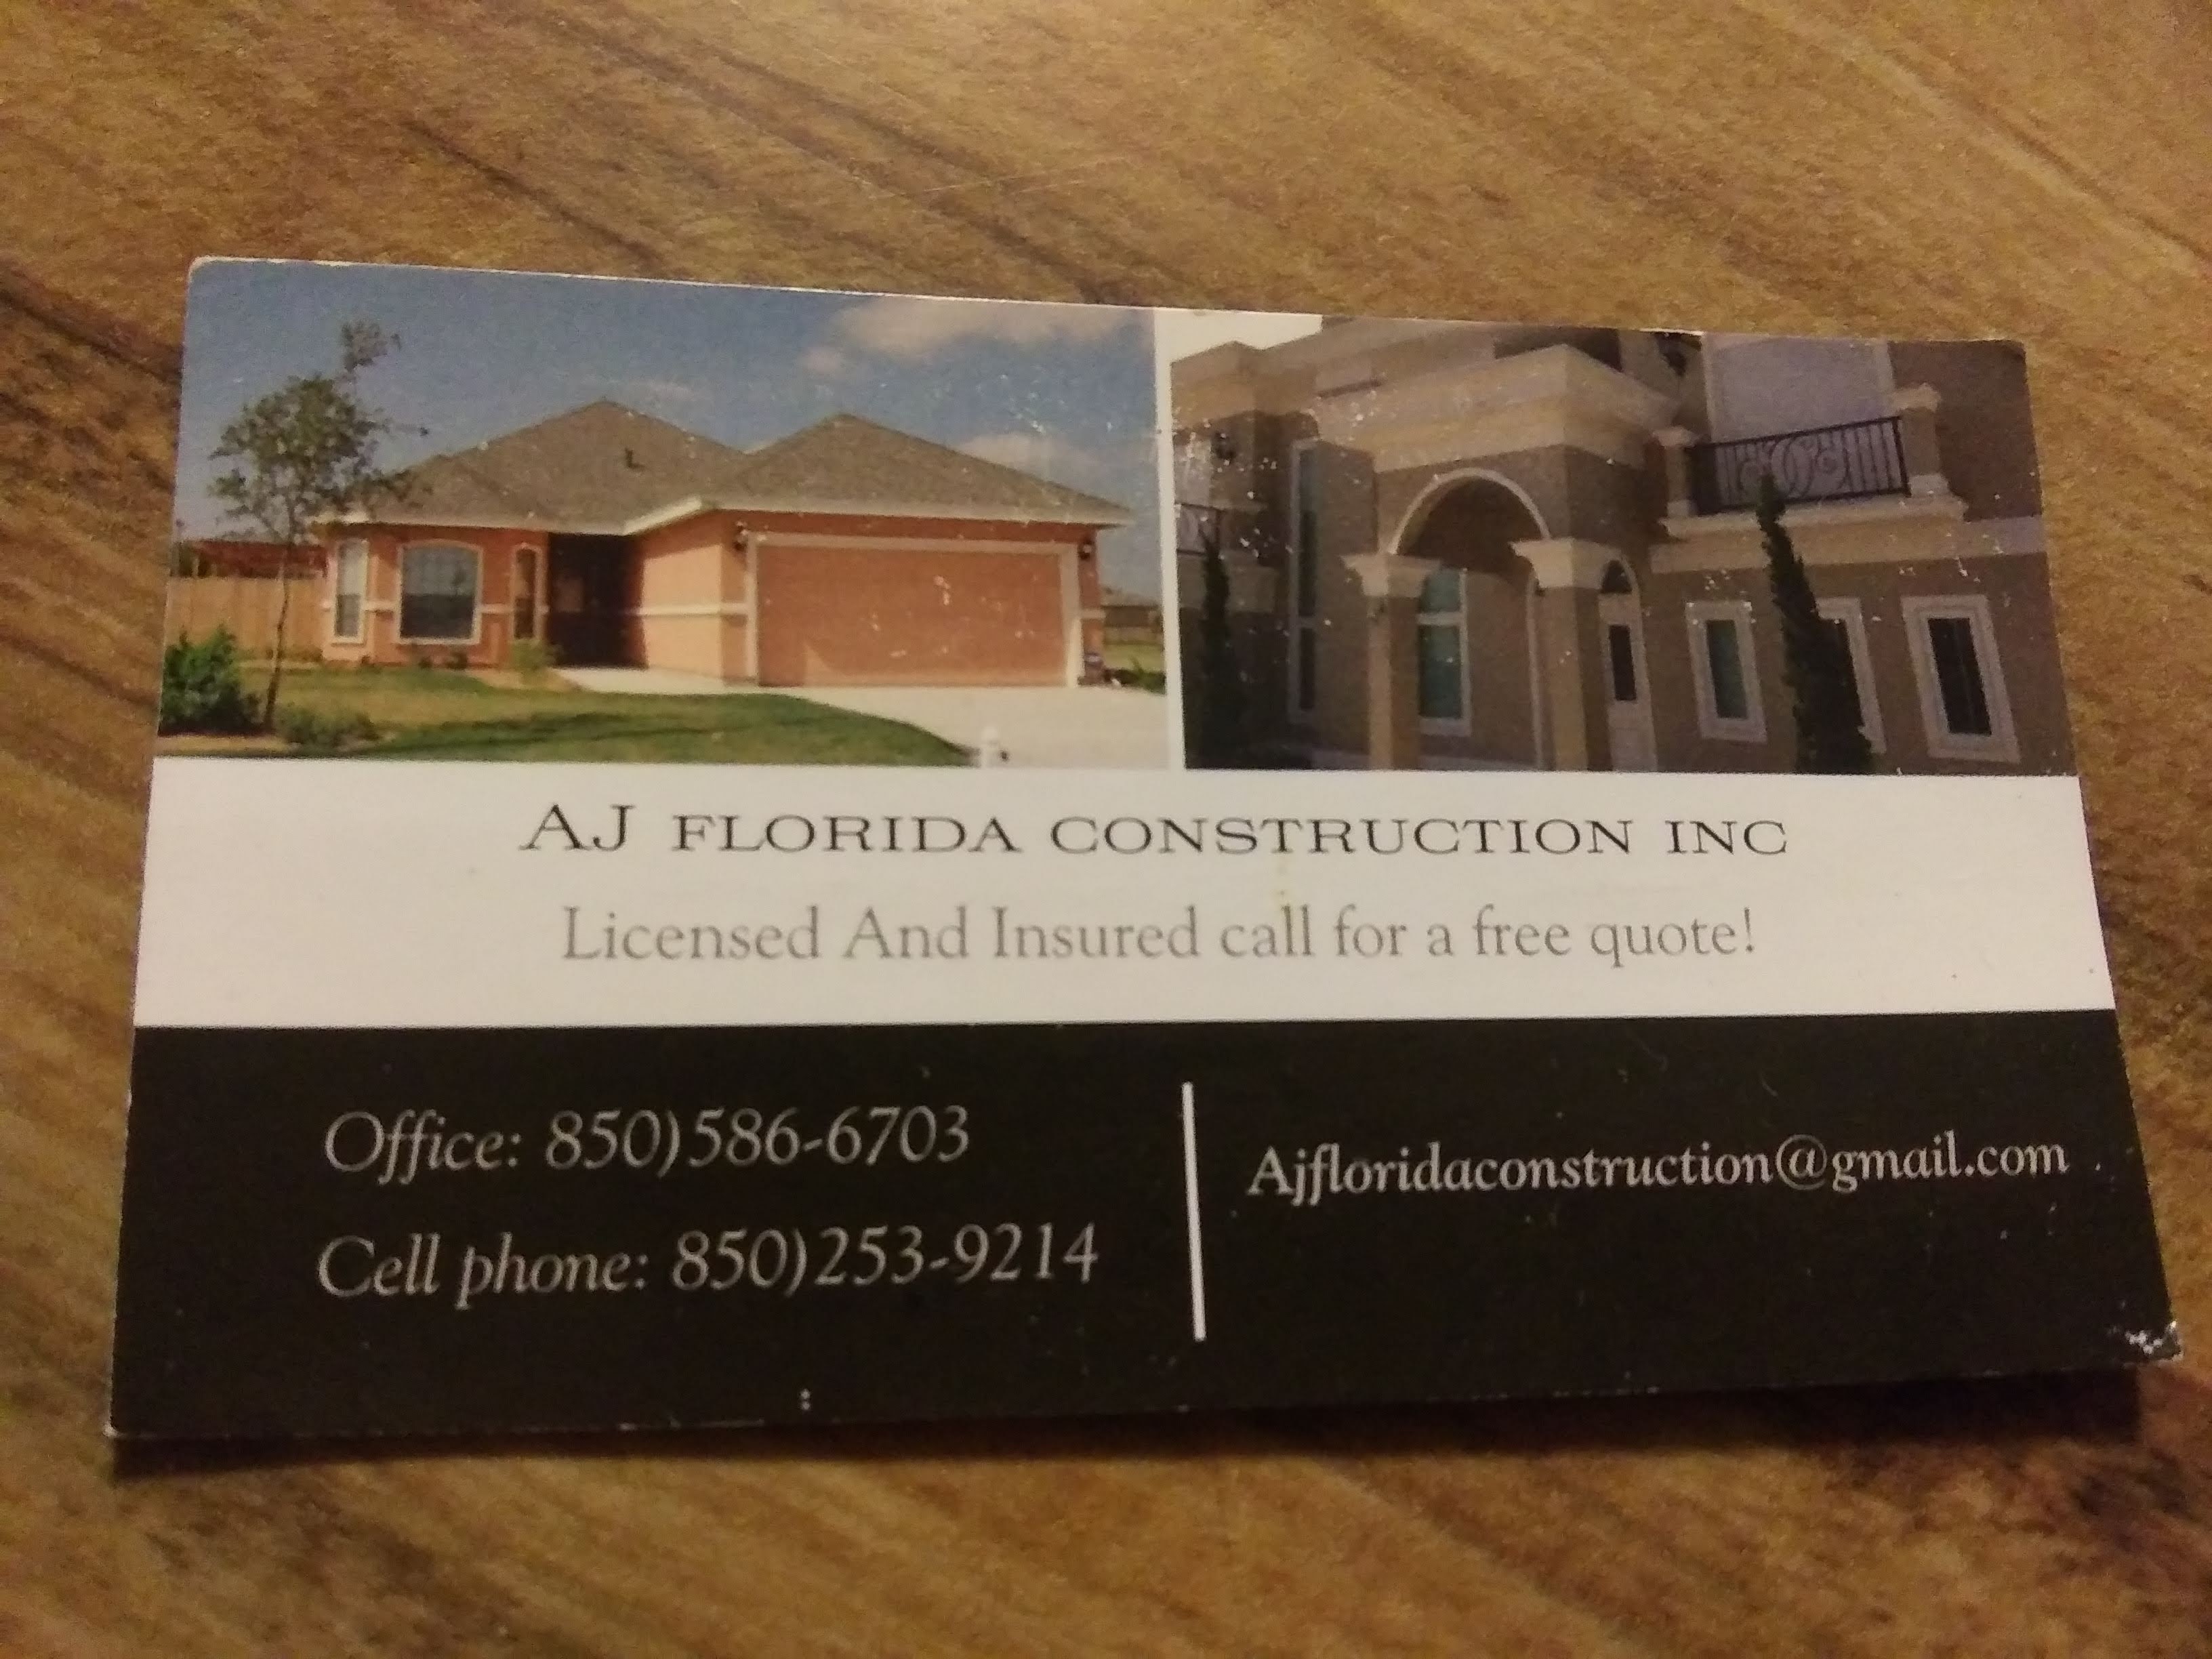 AJ Florida Construction Logo